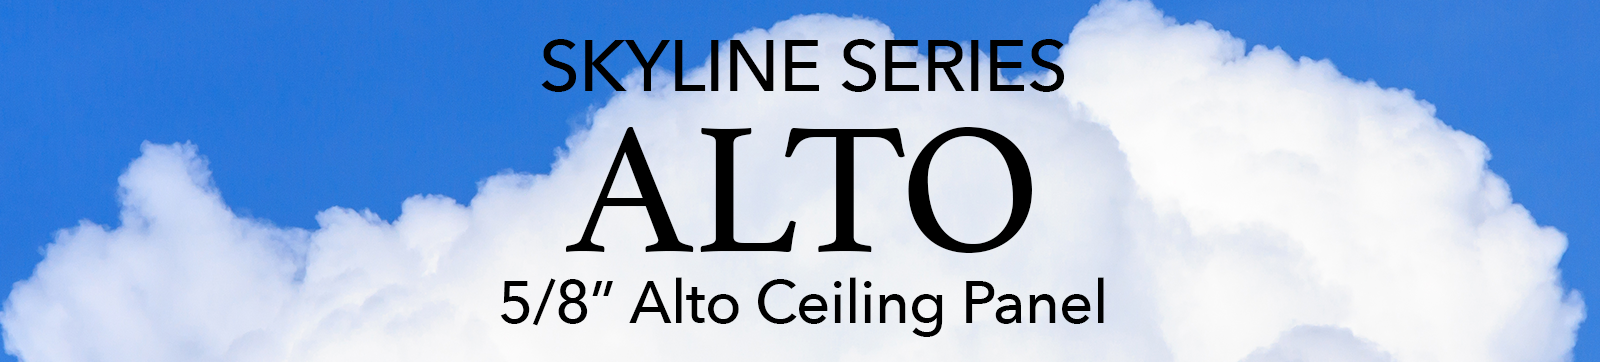 Spantek 5/8" Alto Ceiling Panel Cloud Photo